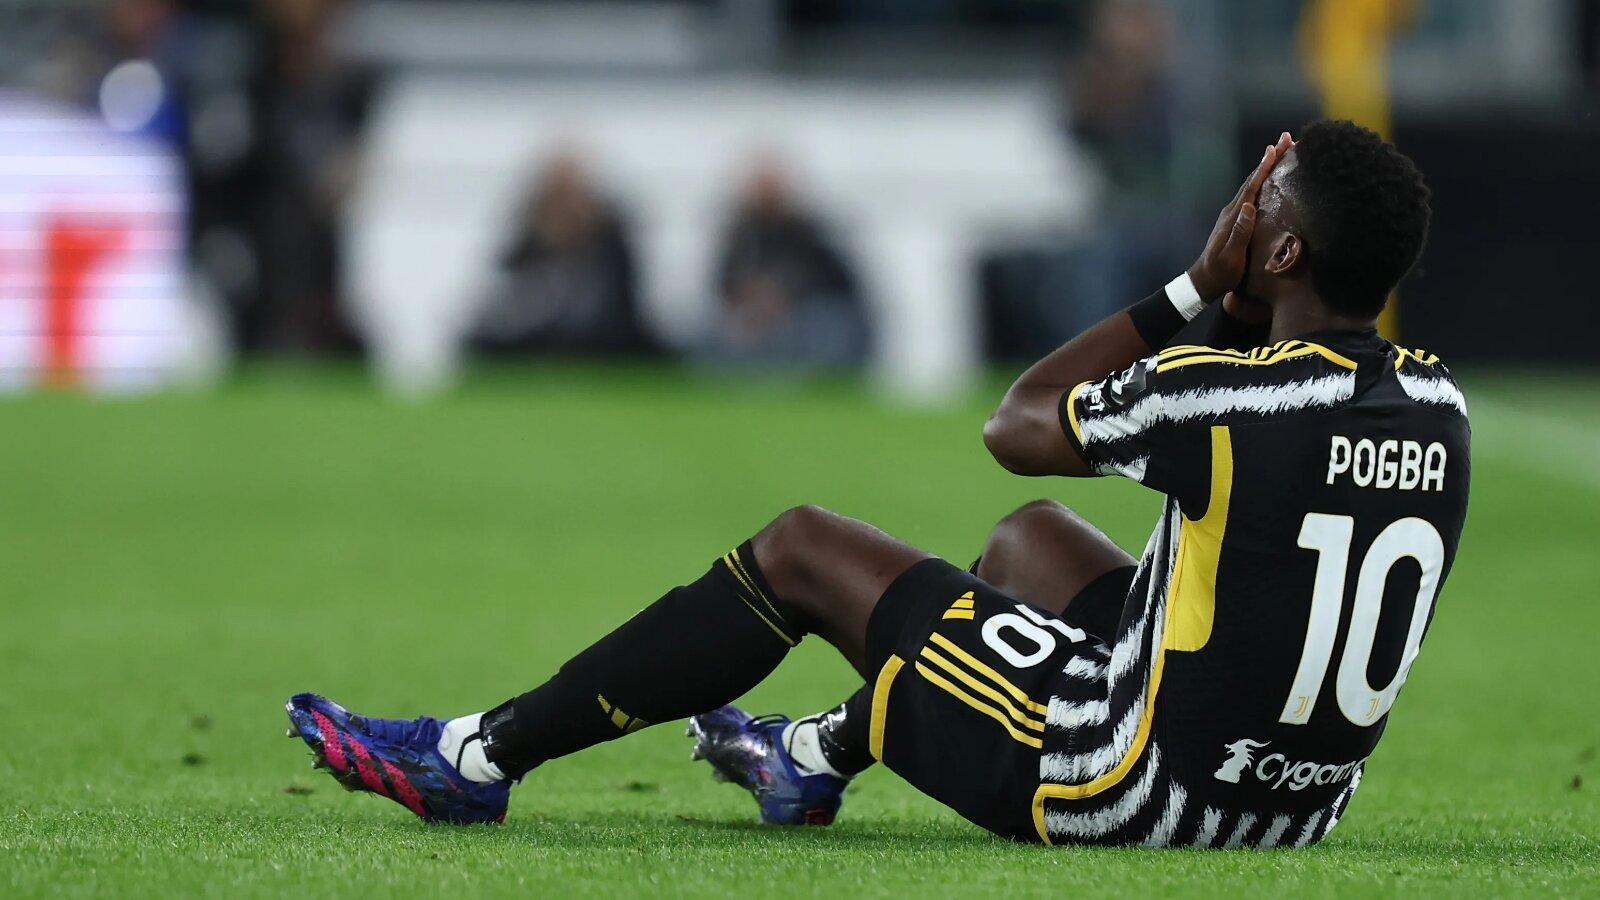 Pogba liên tục gặp chấn thương phải nghỉ thi đấu (nguồn ảnh: Internet)